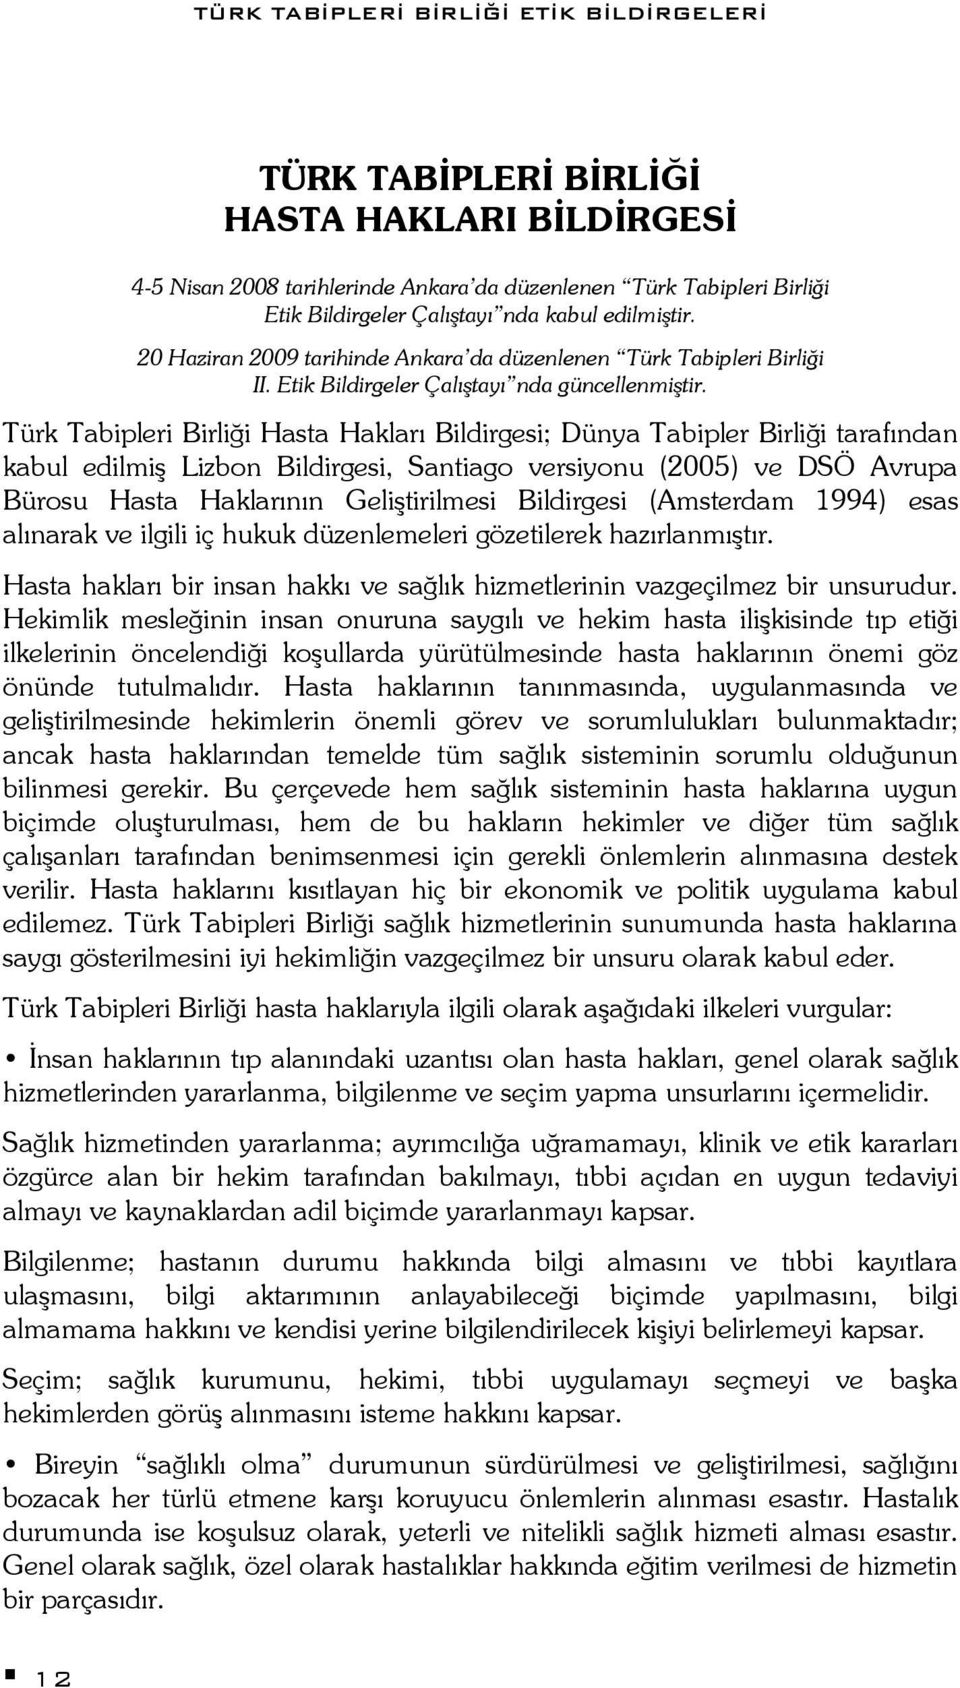 Türk Tabipleri Birliği Hasta Hakları Bildirgesi; Dünya Tabipler Birliği tarafından kabul edilmiş Lizbon Bildirgesi, Santiago versiyonu (2005) ve DSÖ Avrupa Bürosu Hasta Haklarının Geliştirilmesi